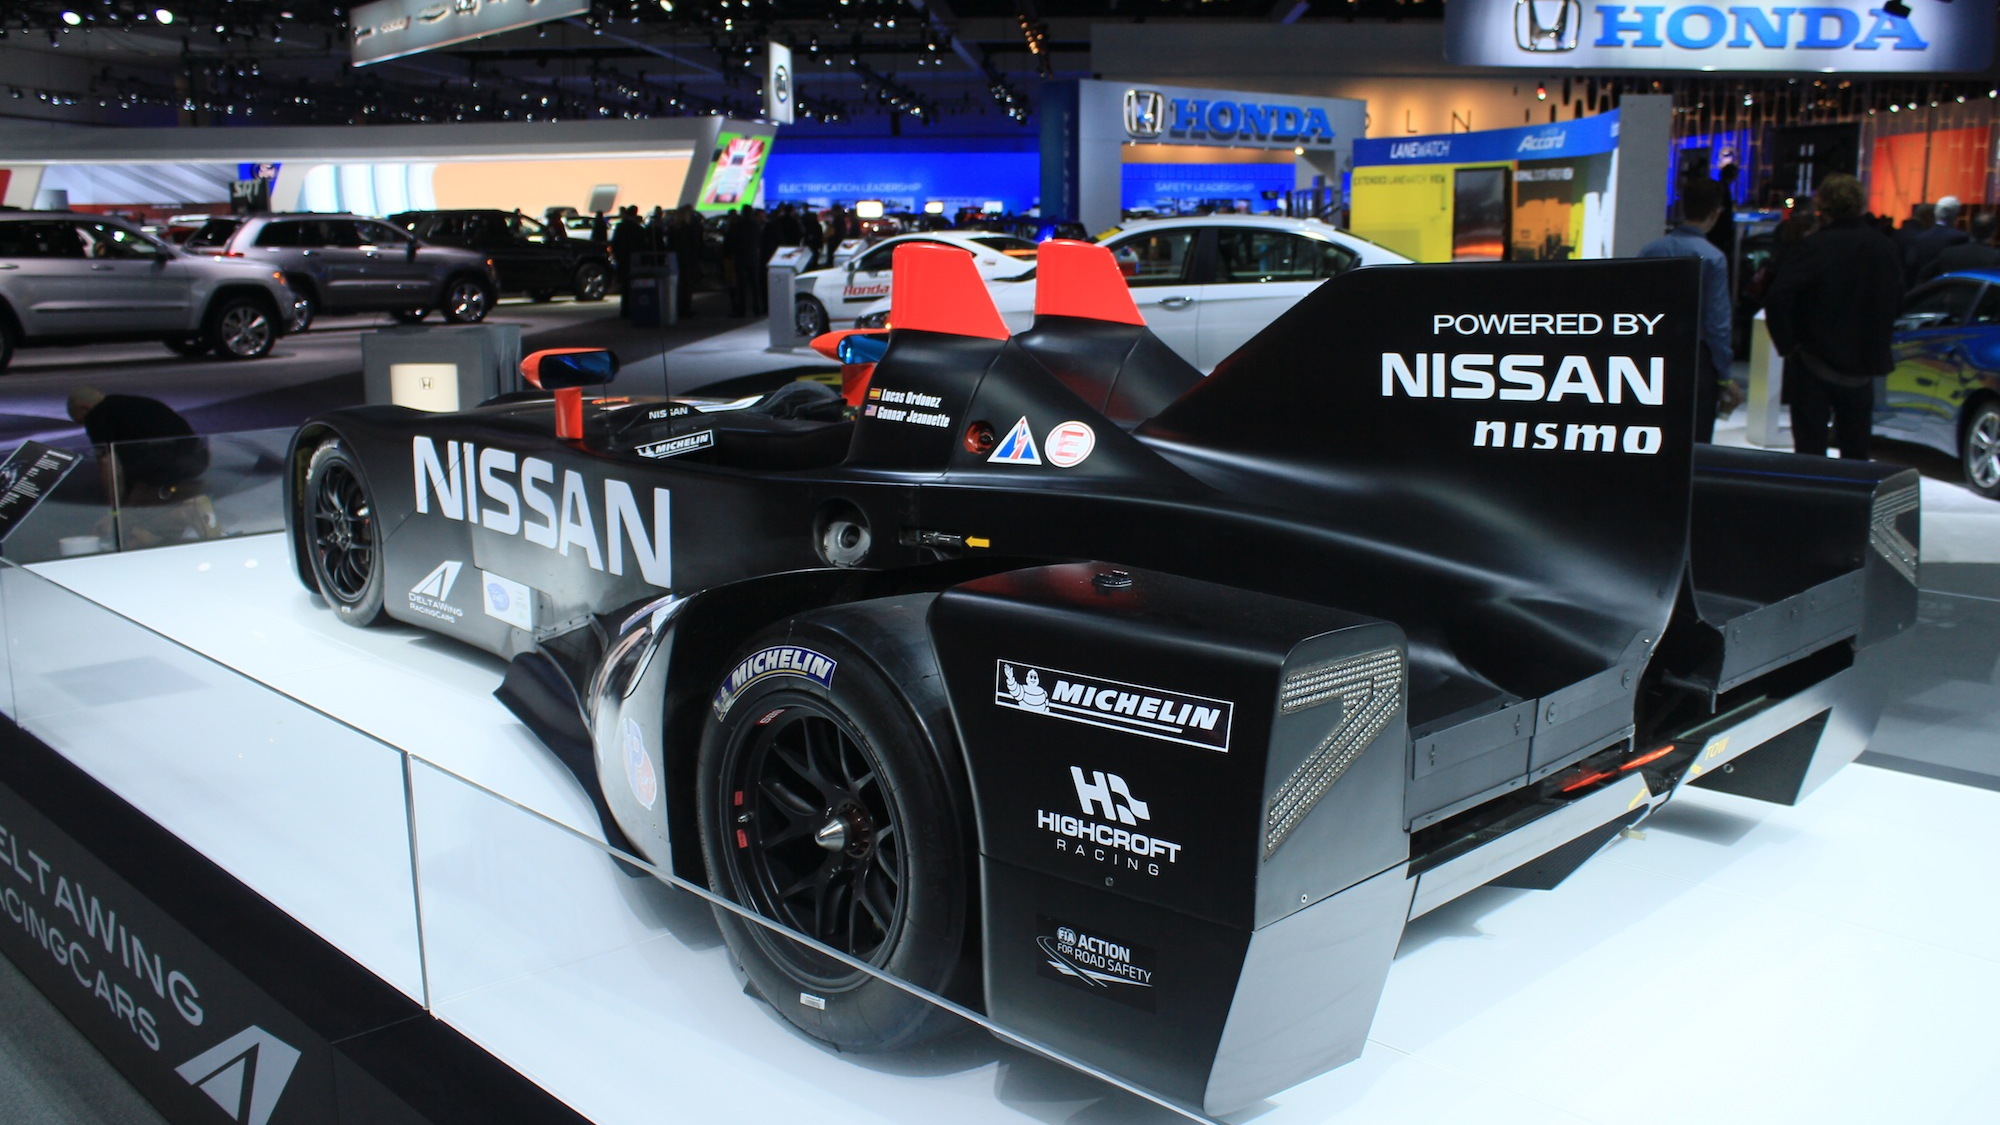 Nissan DeltaWing race car, 2012 L.A. Auto Show